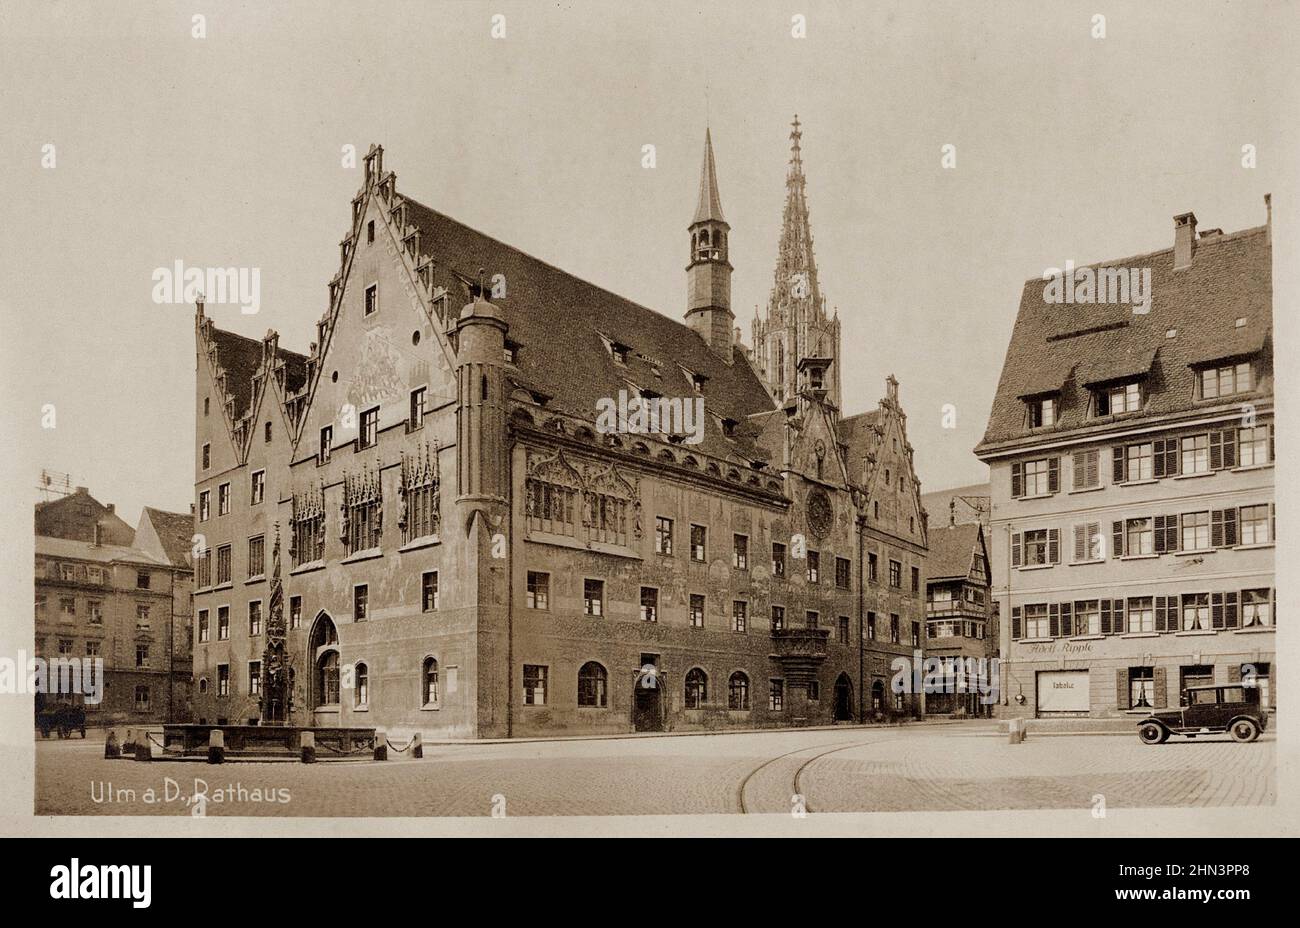 Foto d'epoca di Ulm, Rathaus. Germania. 1920s una città dello stato tedesco di Baden-Württemberg, situata sul Danubio Foto Stock